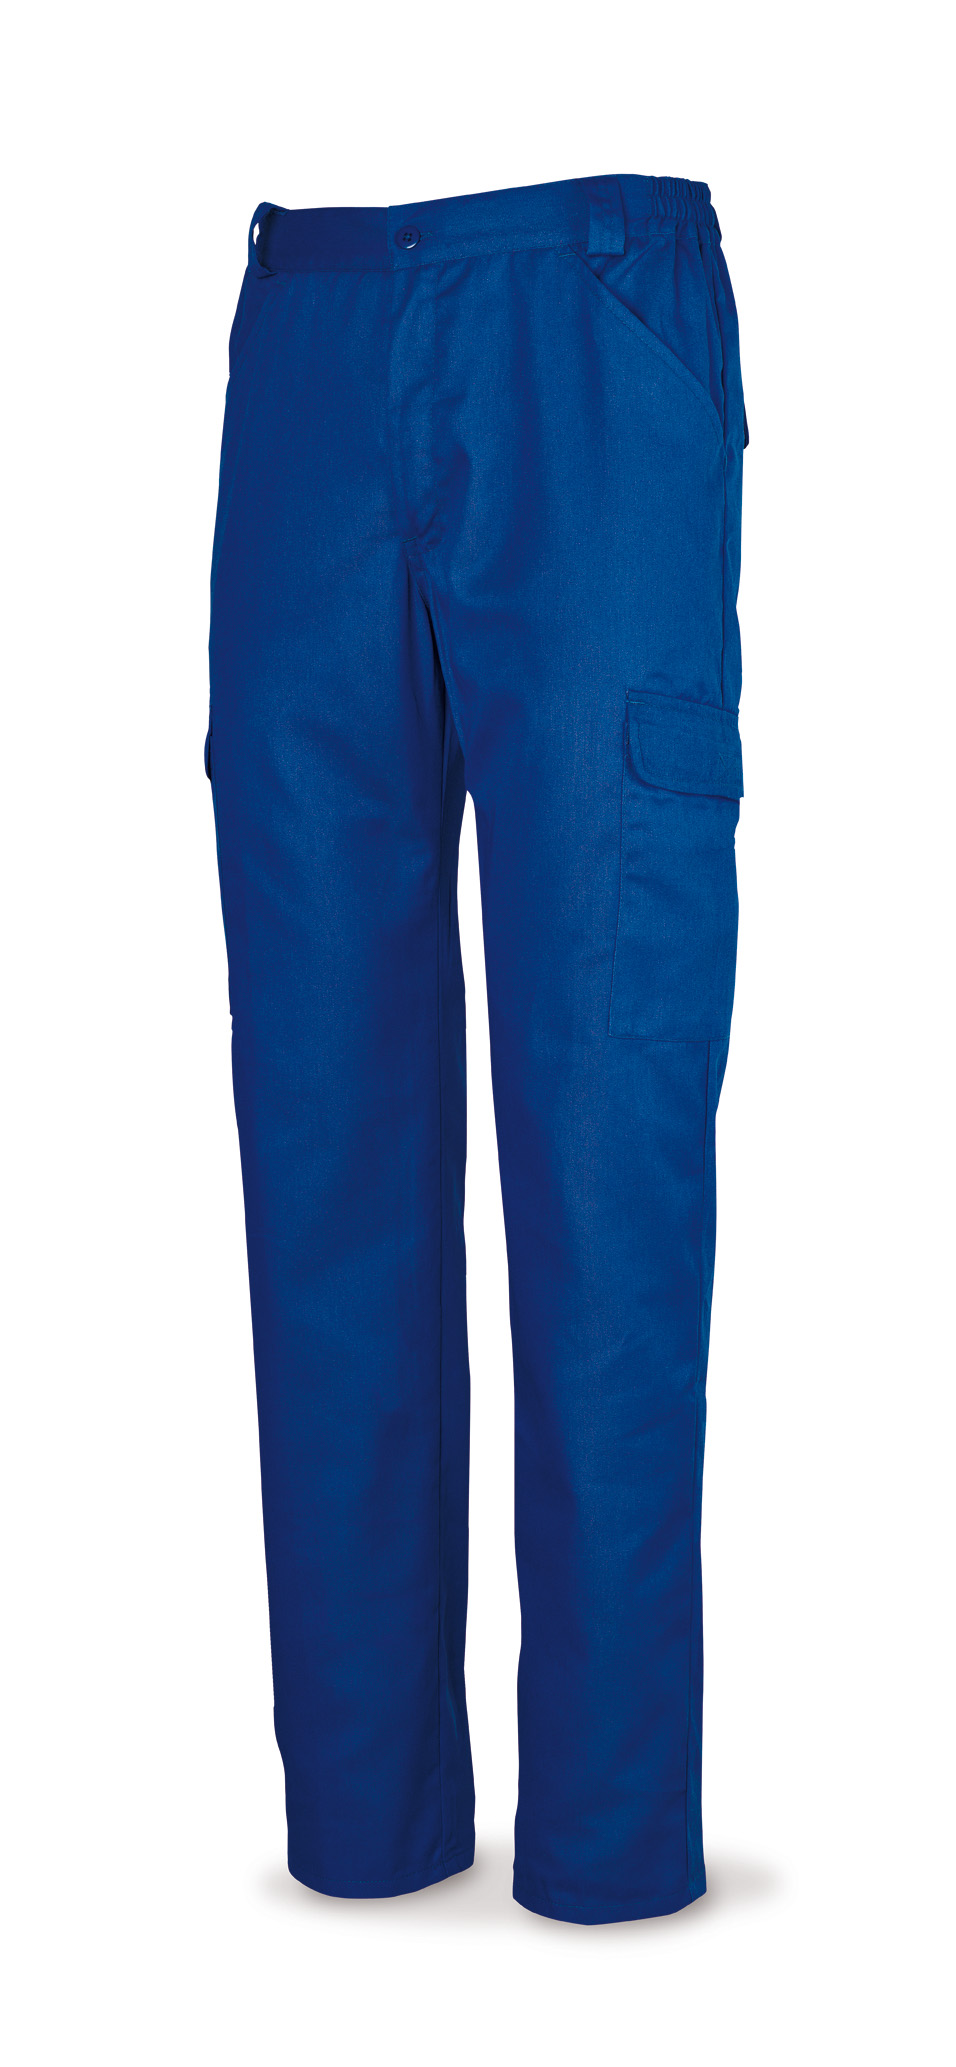 388-B Vetements de travail laboral Série Basics Bleu coton 200 g. bleu roi.